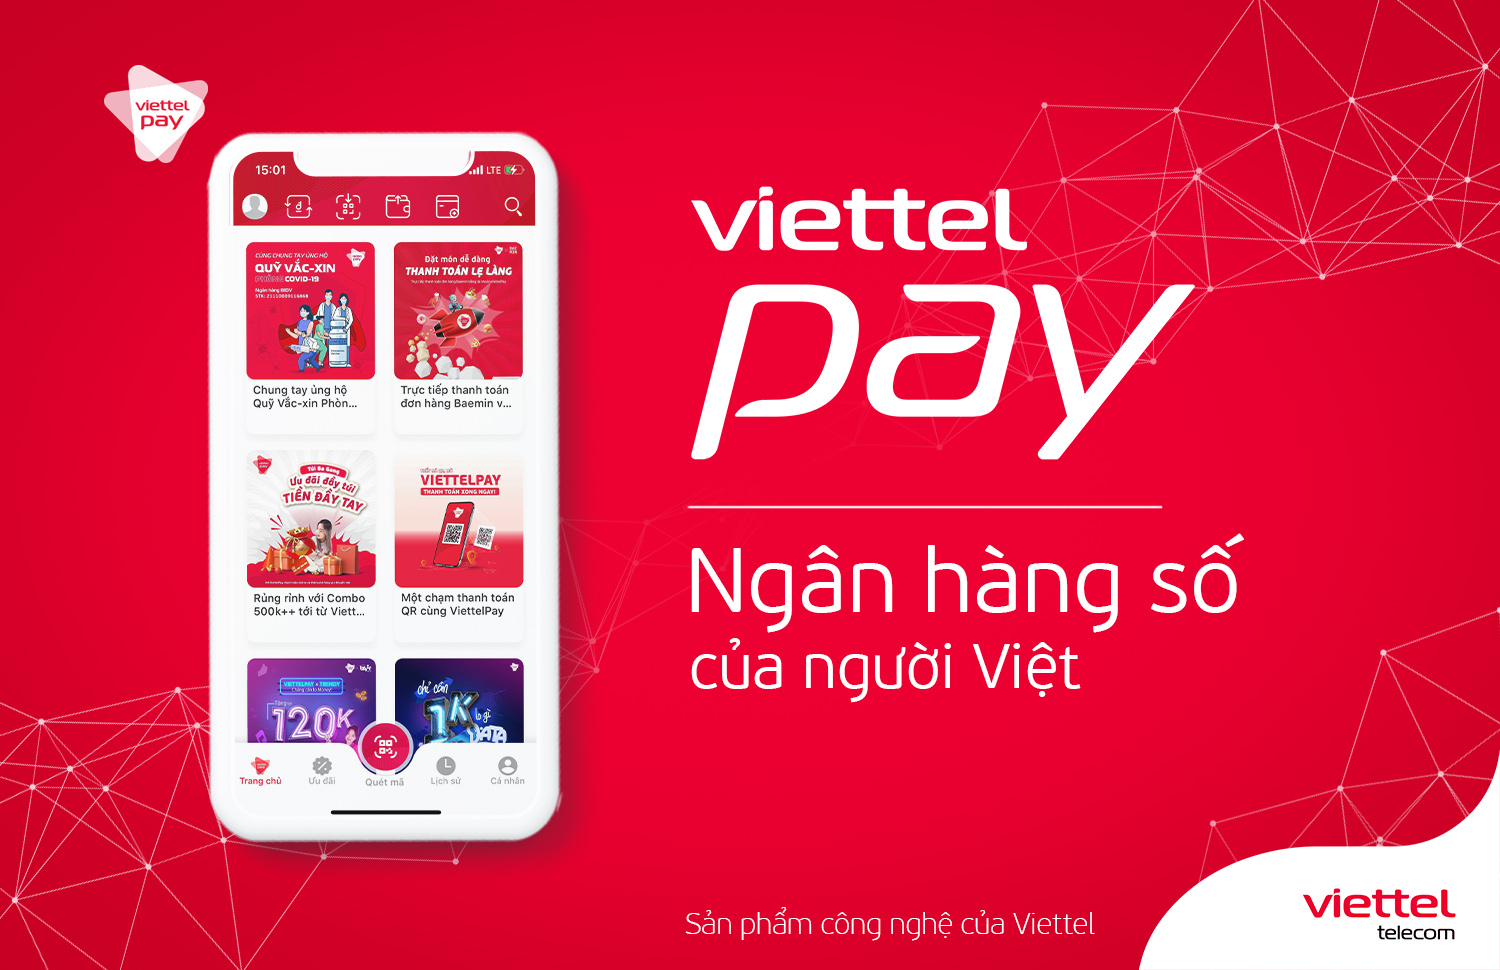 ViettelPay ngân hàng số của người Việt